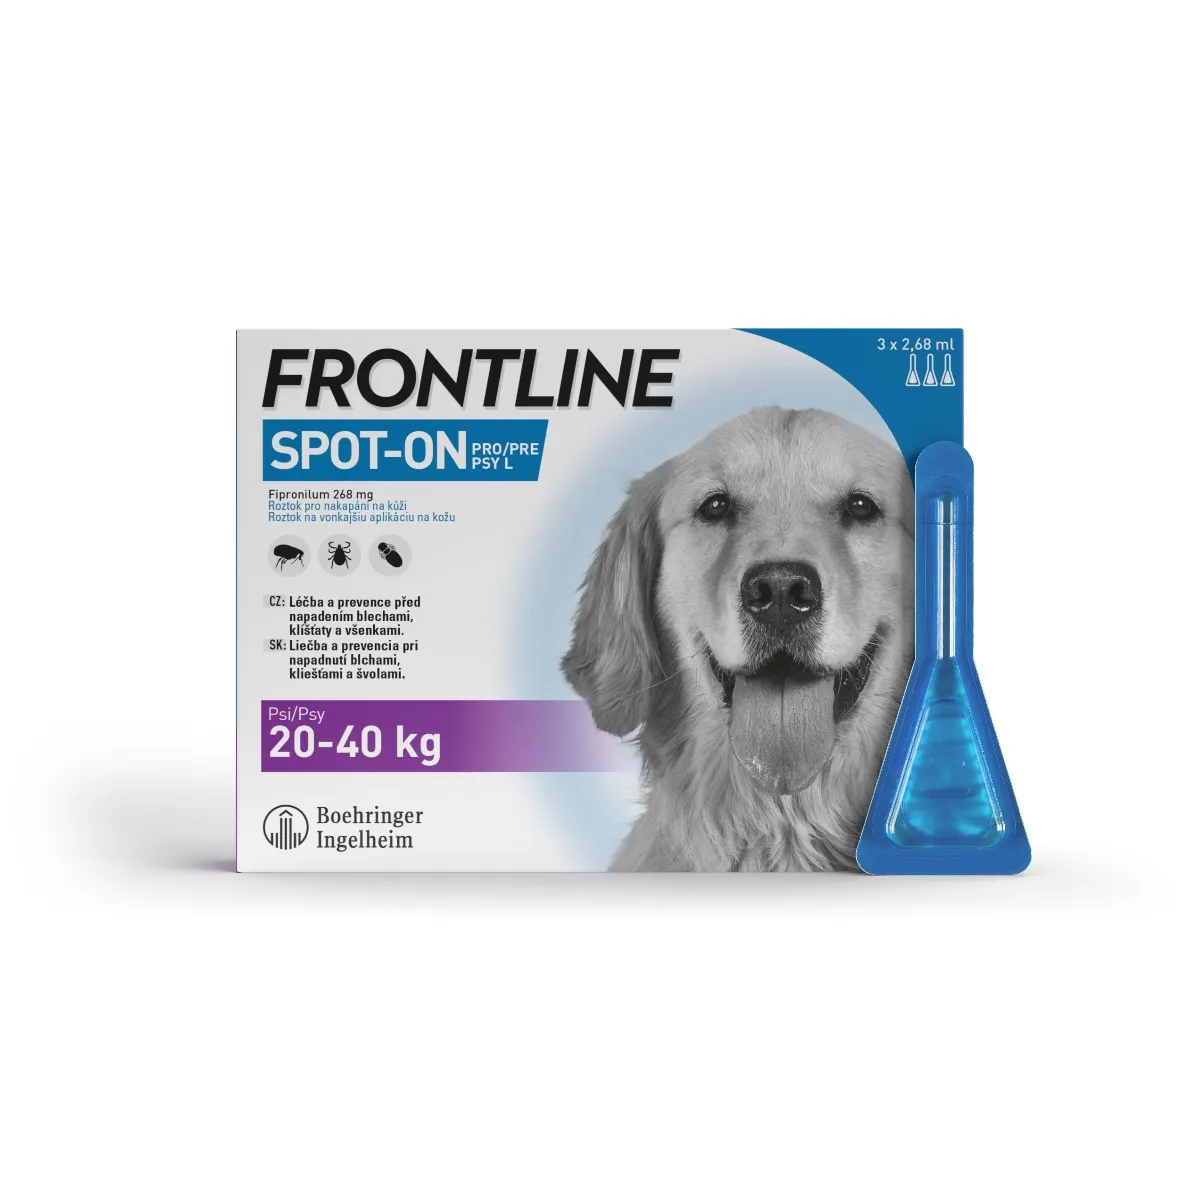 FRONTLINE spot-on pro DOG L  3 x 2,68 ml 3x2,68 ml